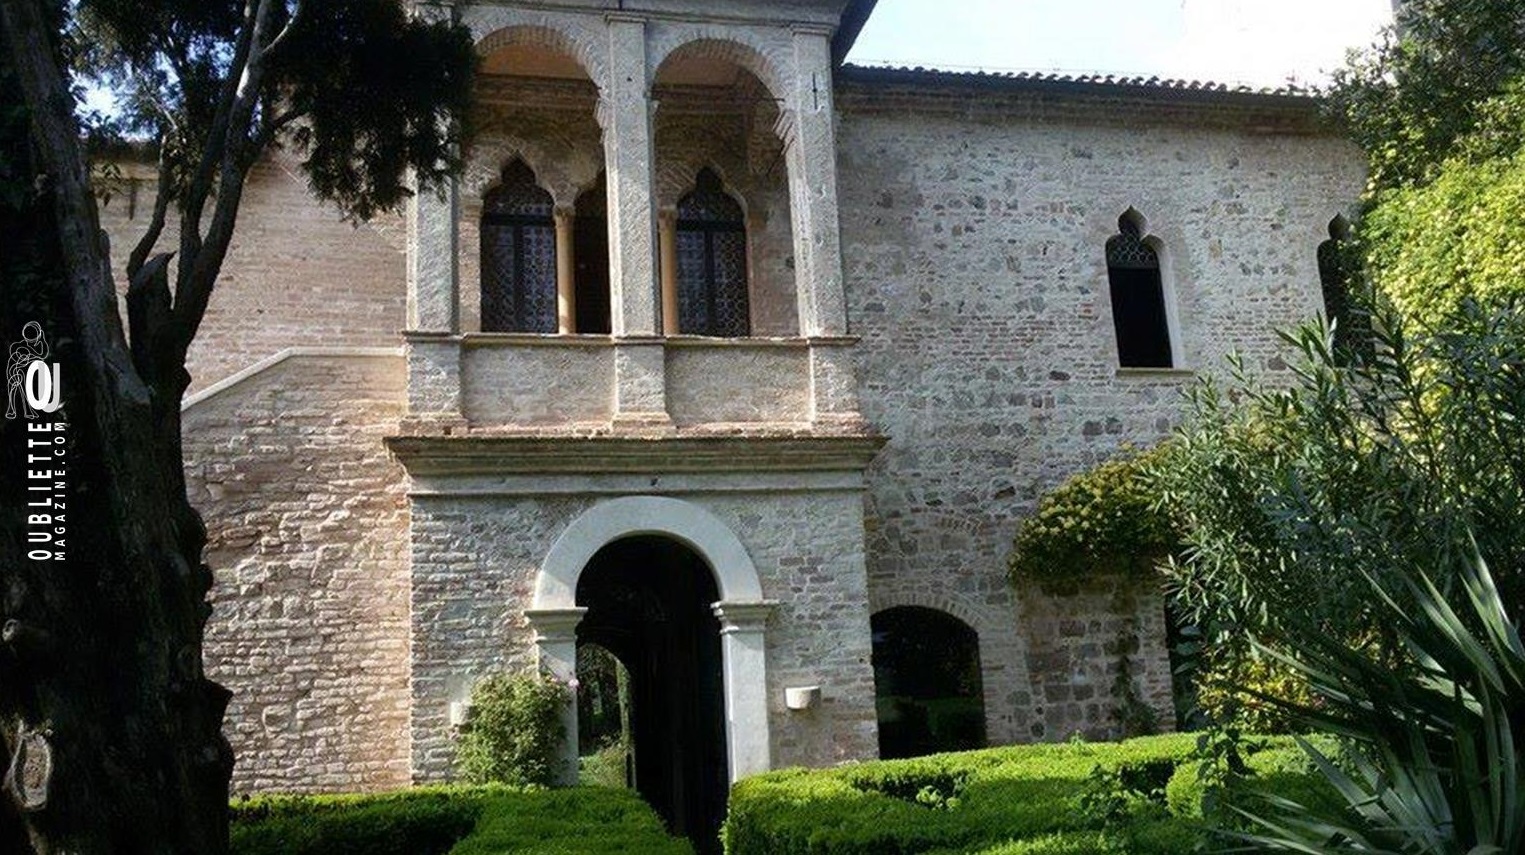 La casa di Francesco Petrarca: un suggestivo museo ad Arquà in provincia di Padova